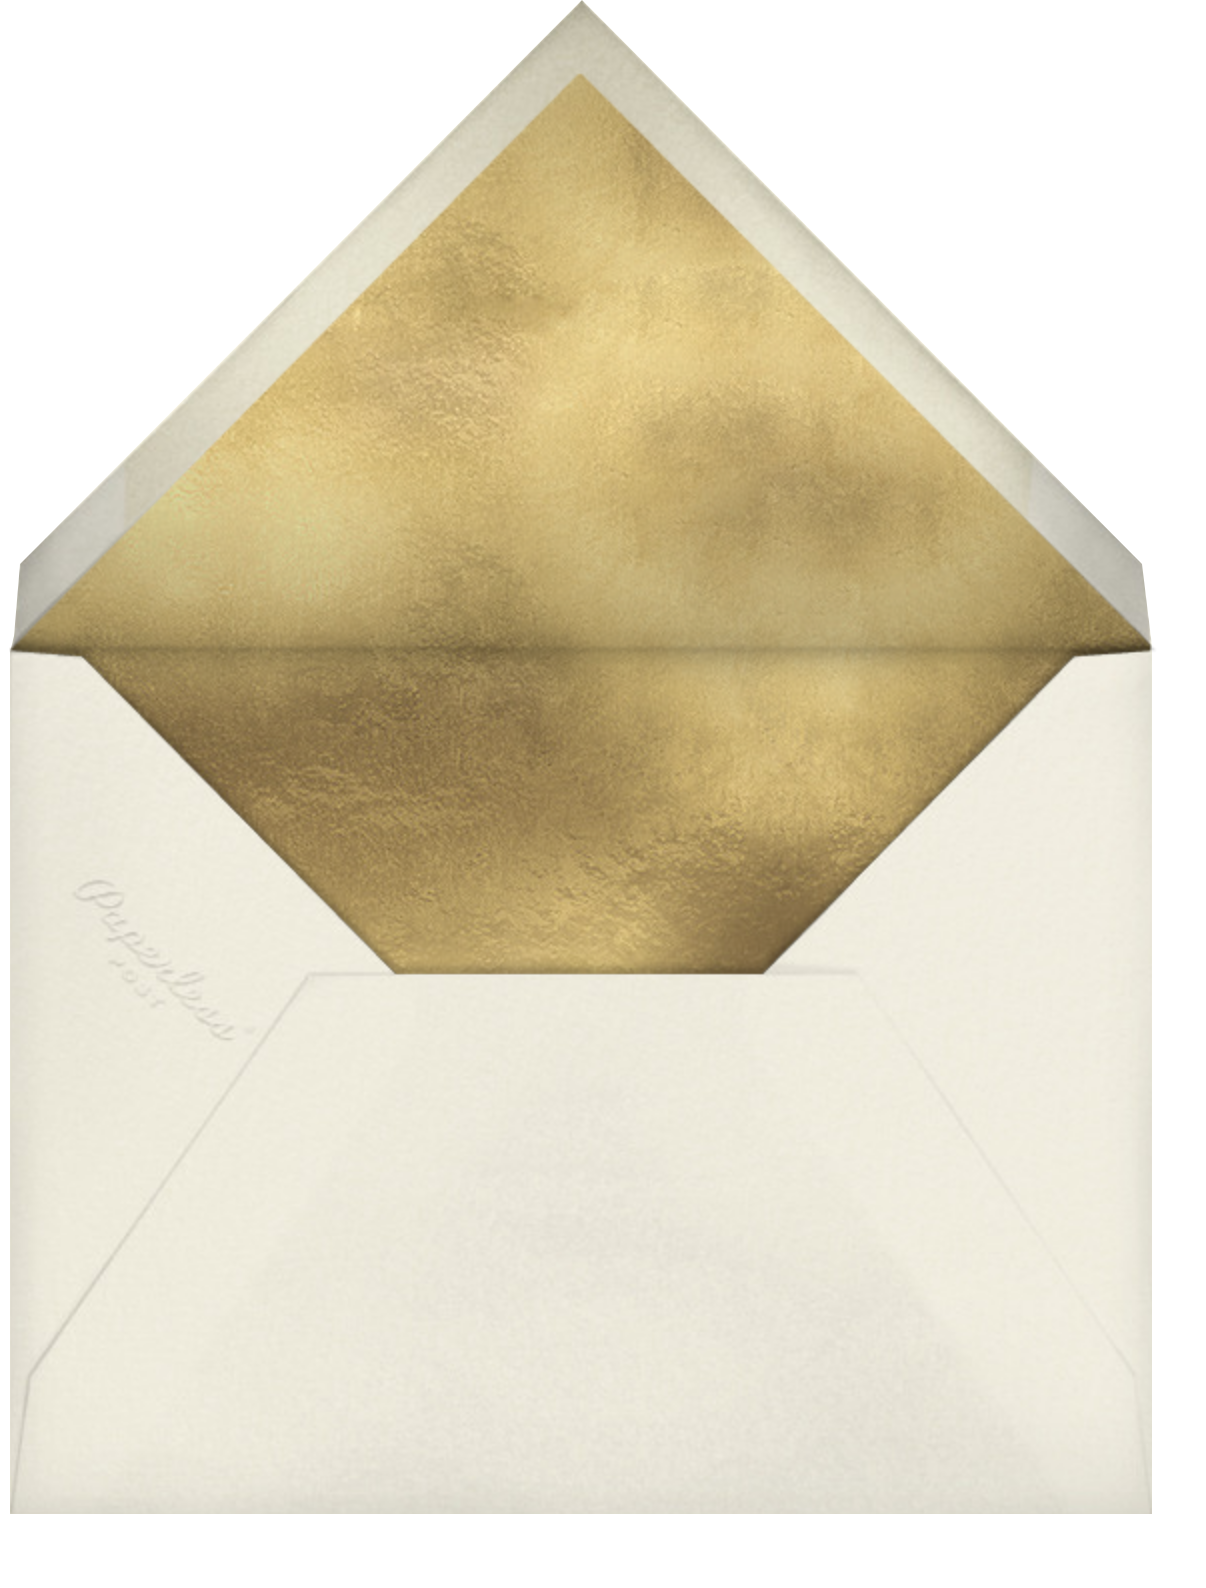 Stamped - Olive - Oscar de la Renta - Envelope